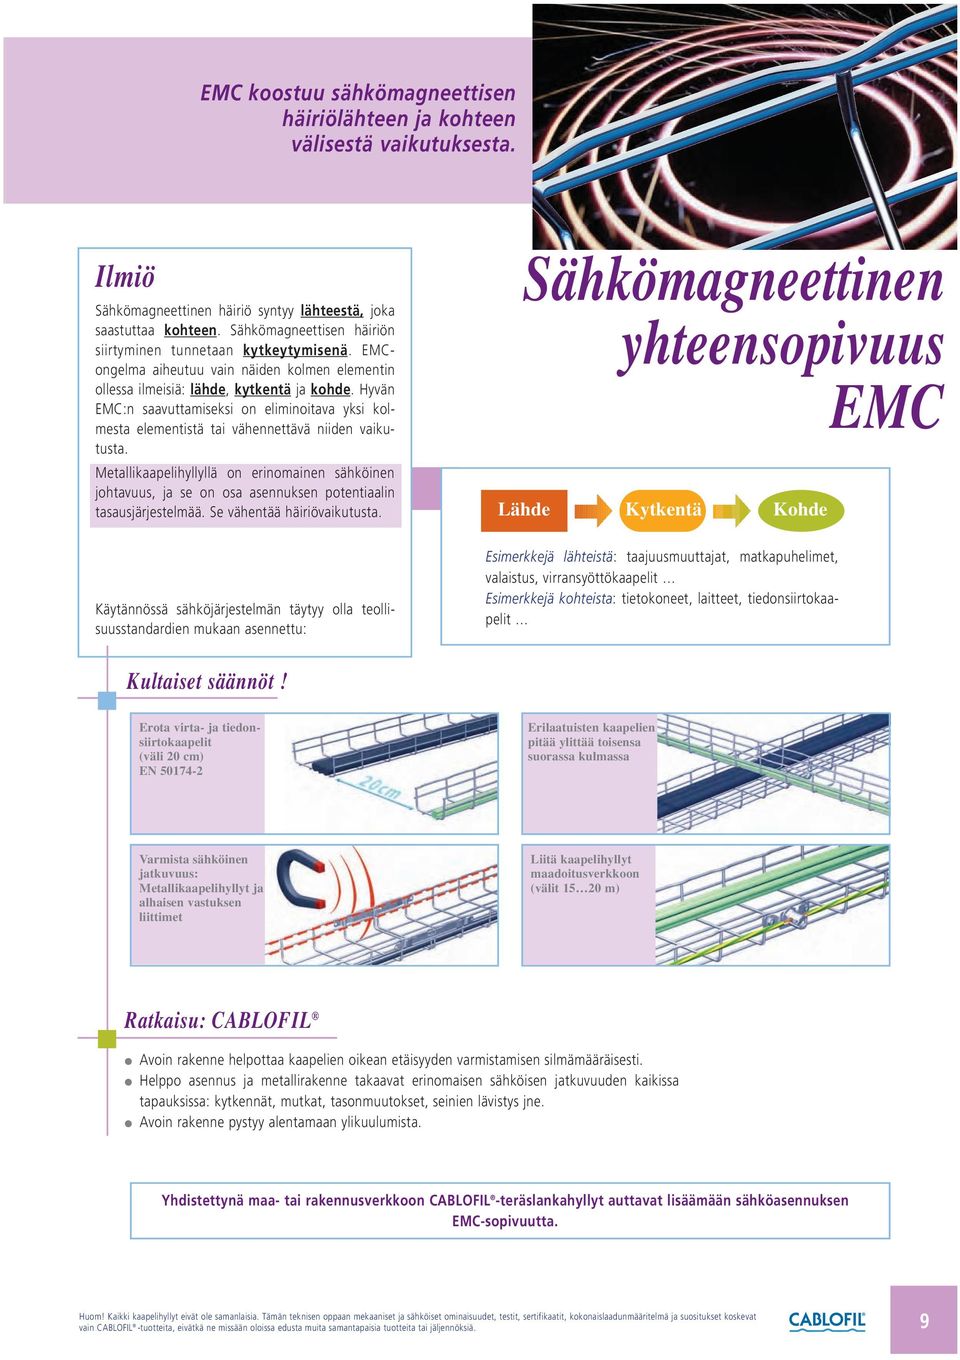 Hyvän EMC:n saavuttamiseksi on eliminoitava yksi kolmesta elementistä tai vähennettävä niiden vaikutusta.